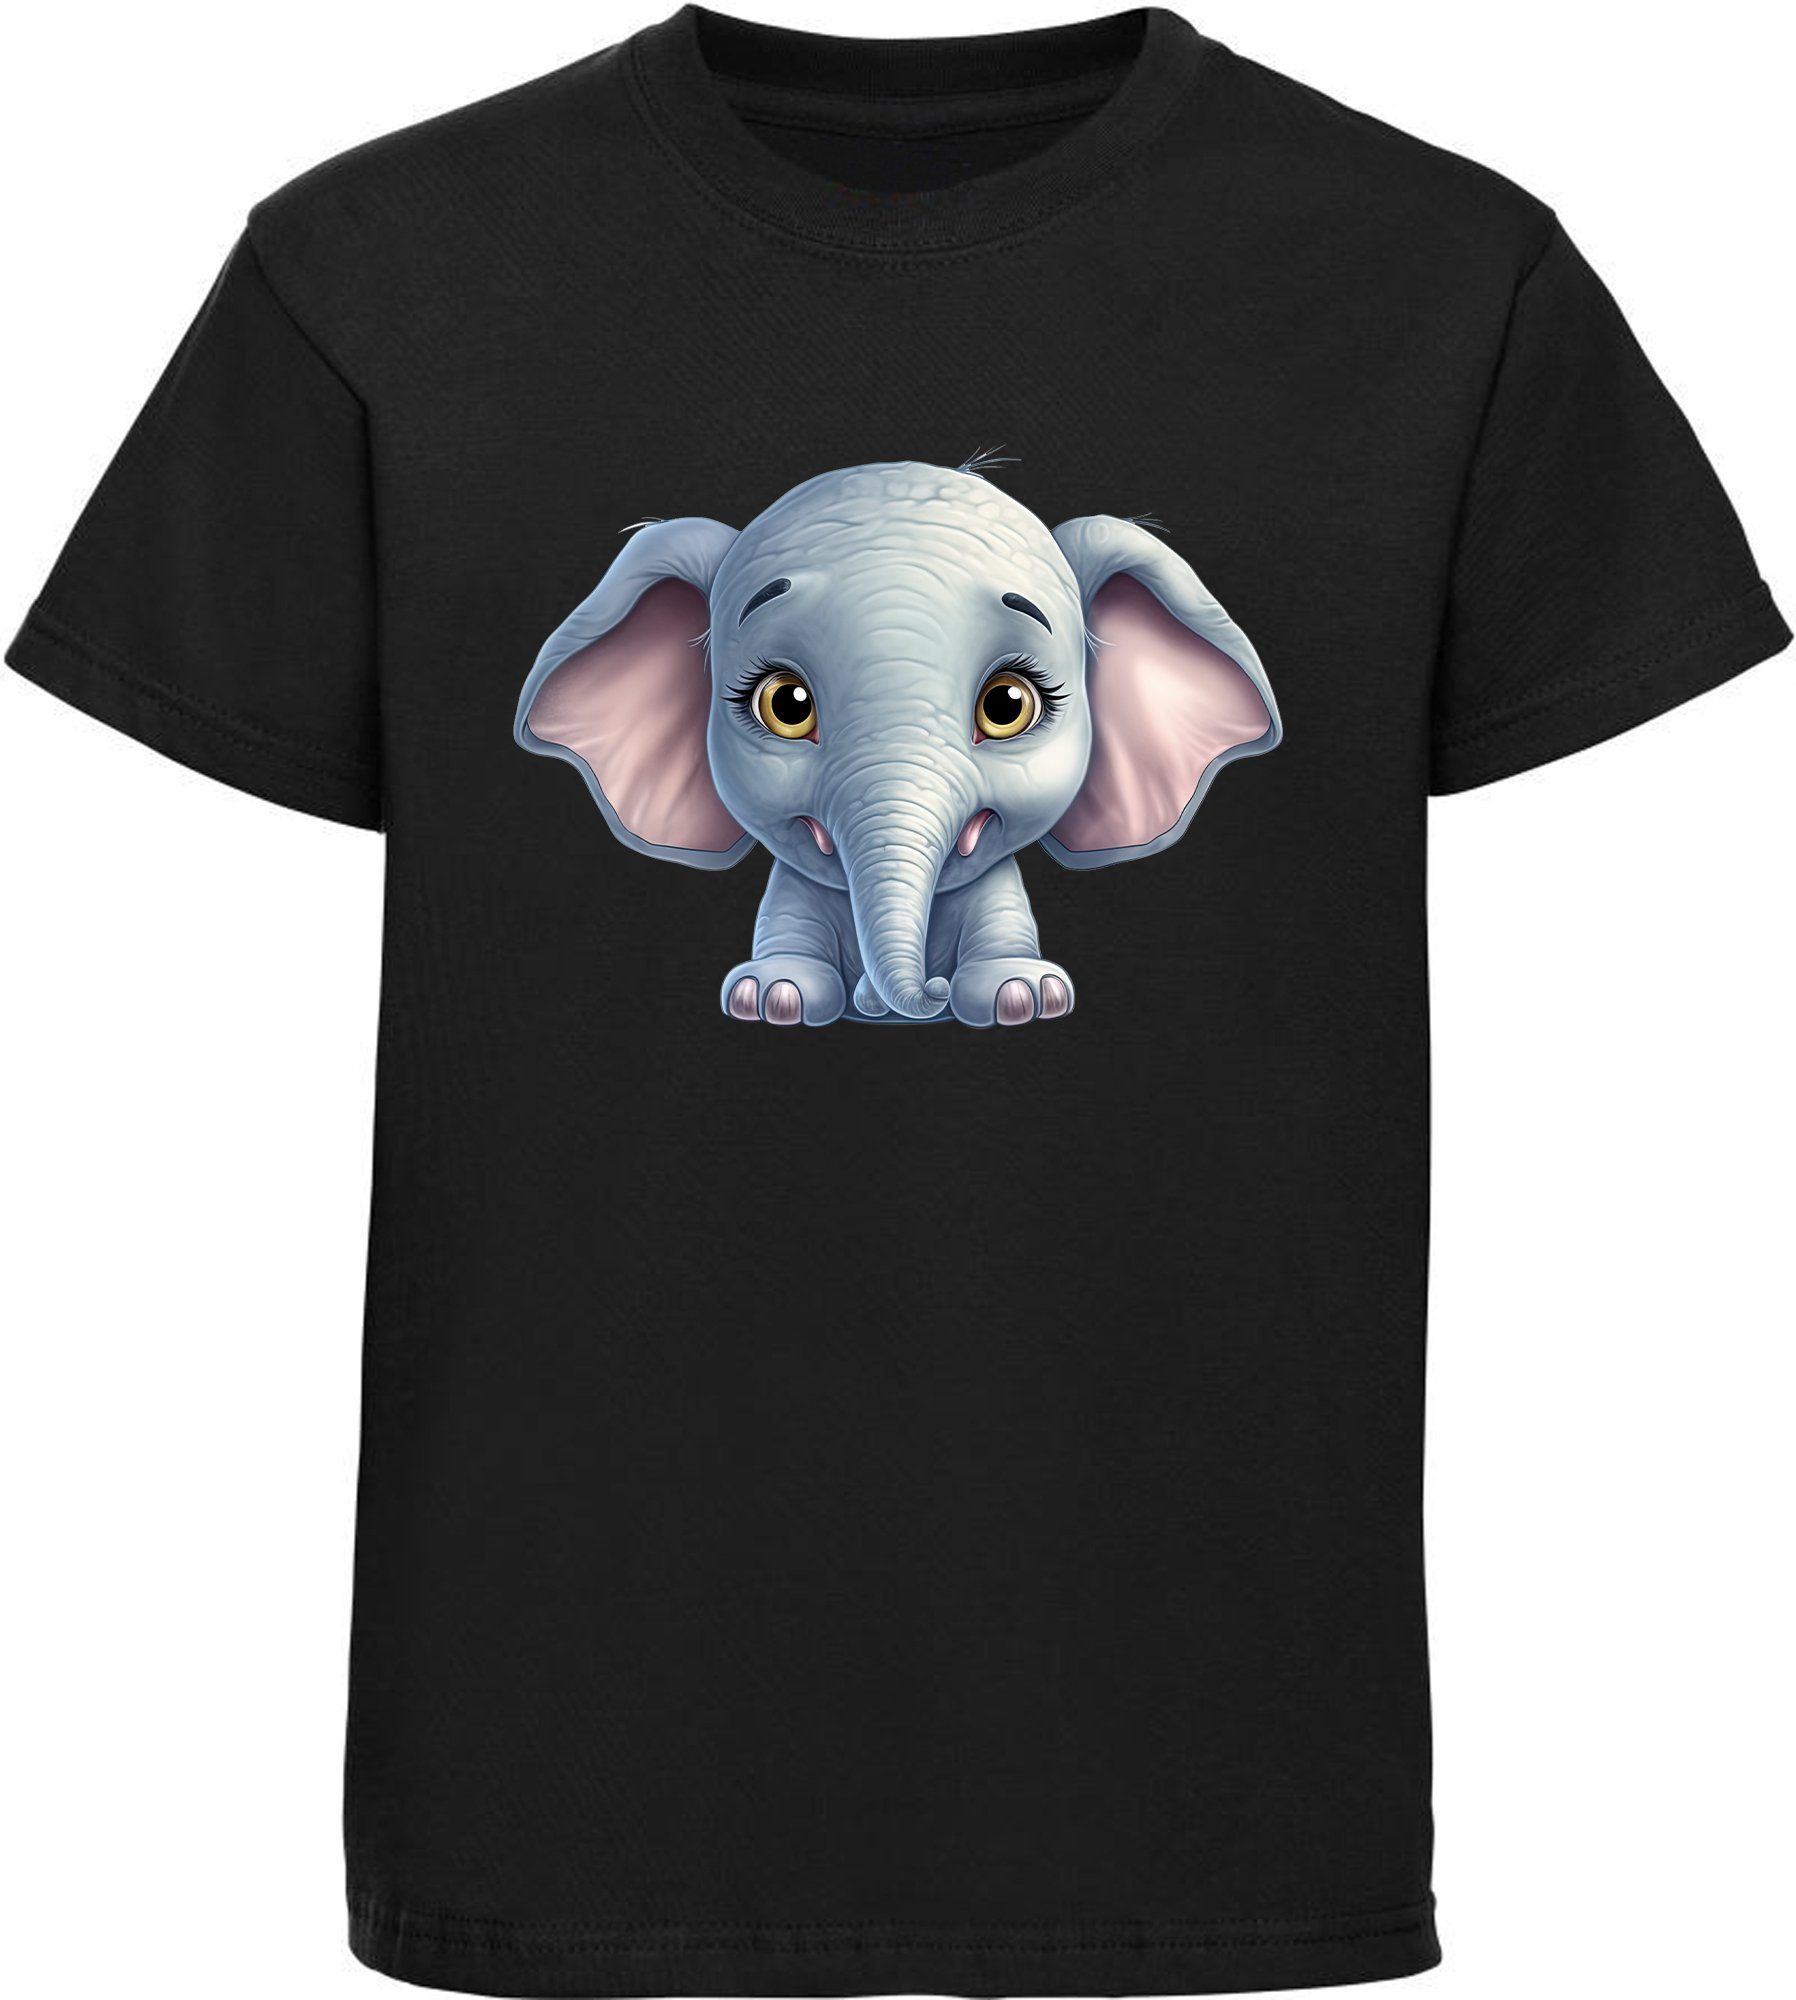 MyDesign24 T-Shirt Kinder Wildtier Print Shirt Elefant - Baby schwarz bedruckt mit i272 Baumwollshirt Aufdruck